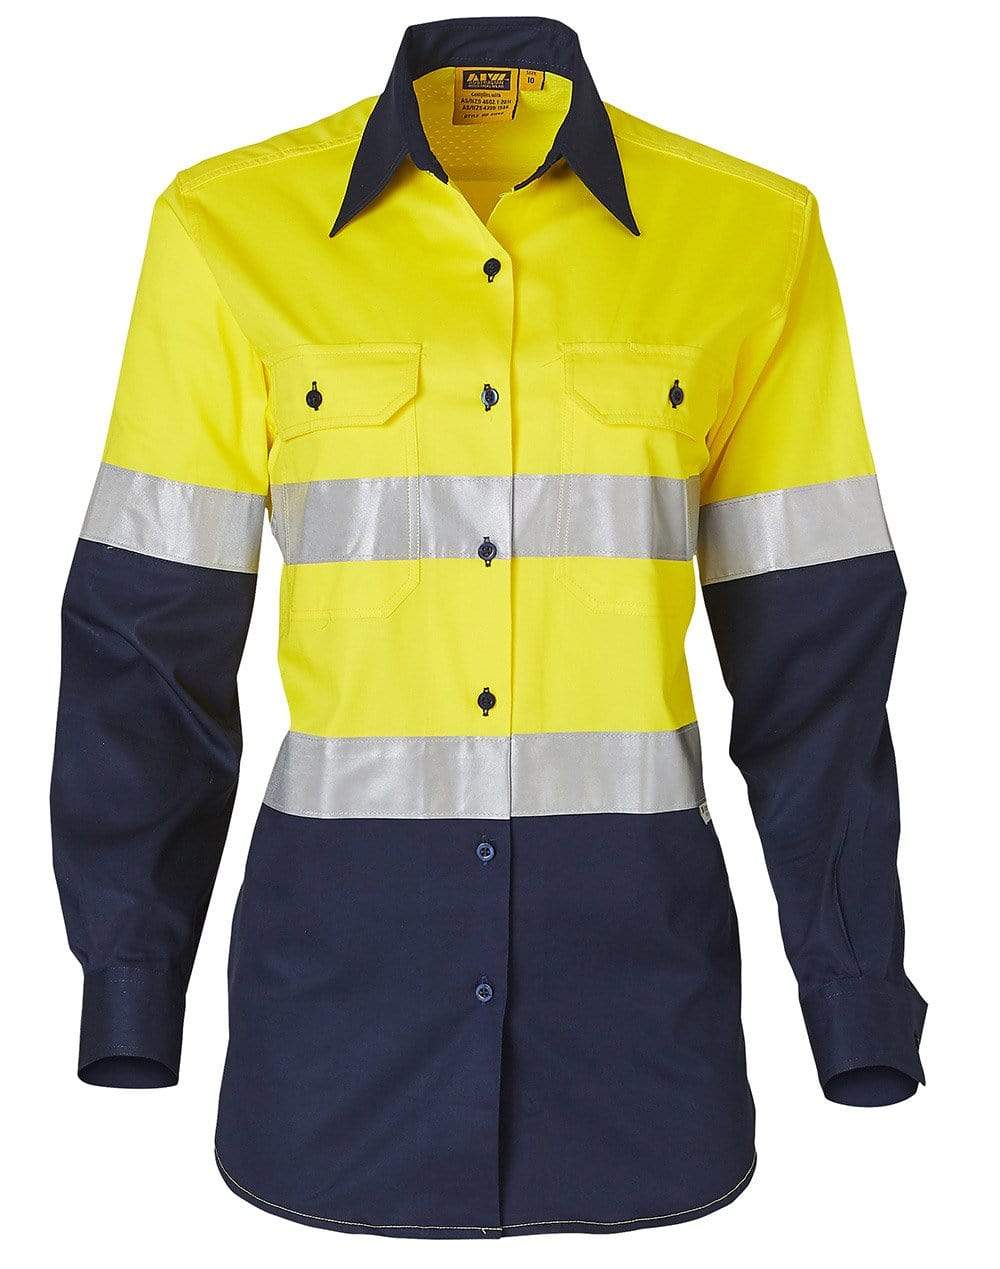 Women's Long Sleeve Safety Shirt SW65 Work Wear Australian Industrial Wear Fluoro Yellow/Navy 8 